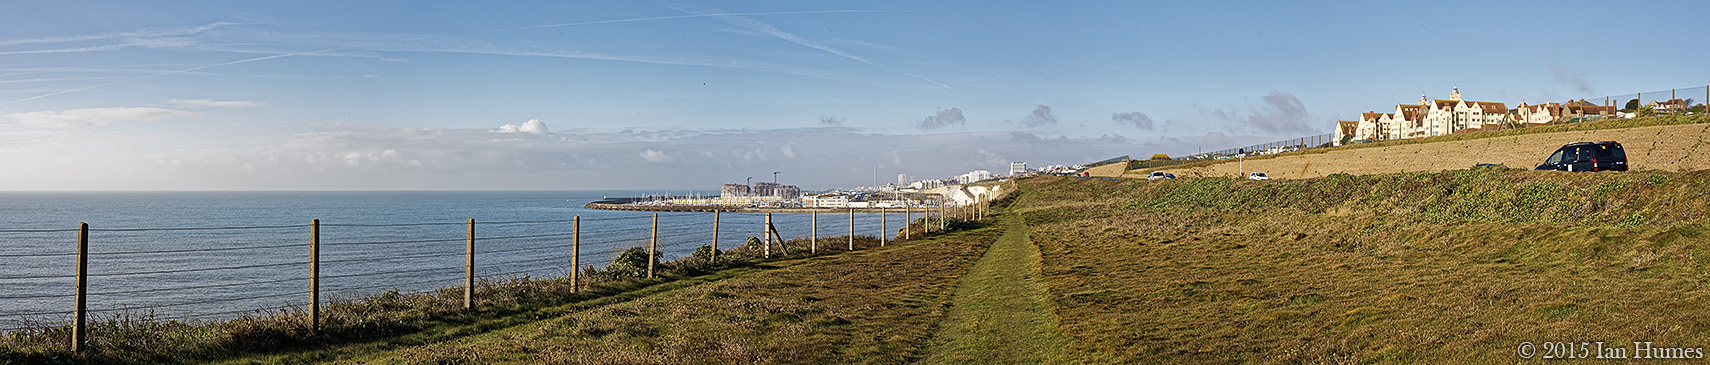 Brighton - East Sussex